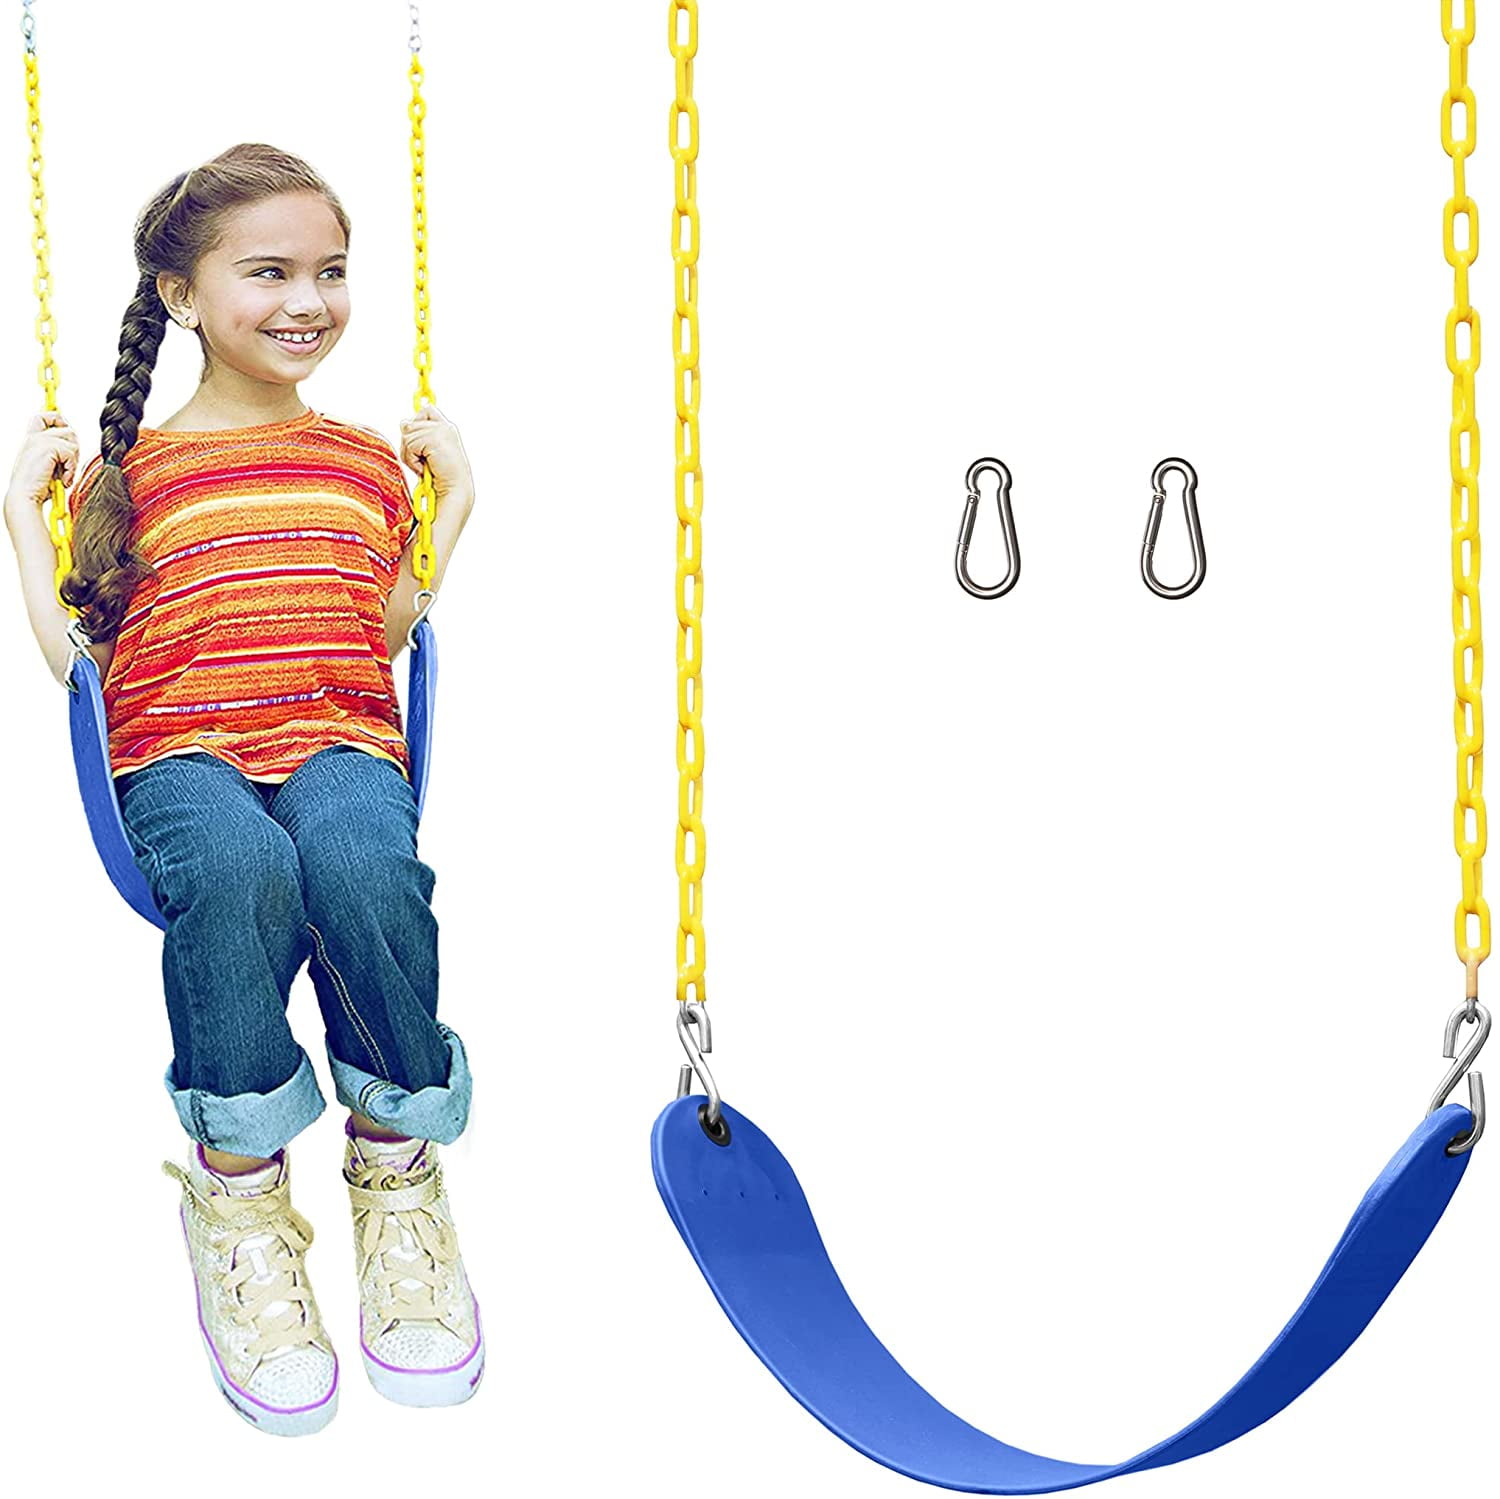 Kids Bucket Swing Toddler Swingset Swing Seat w/58"Chain Steel Insert Blue Color 